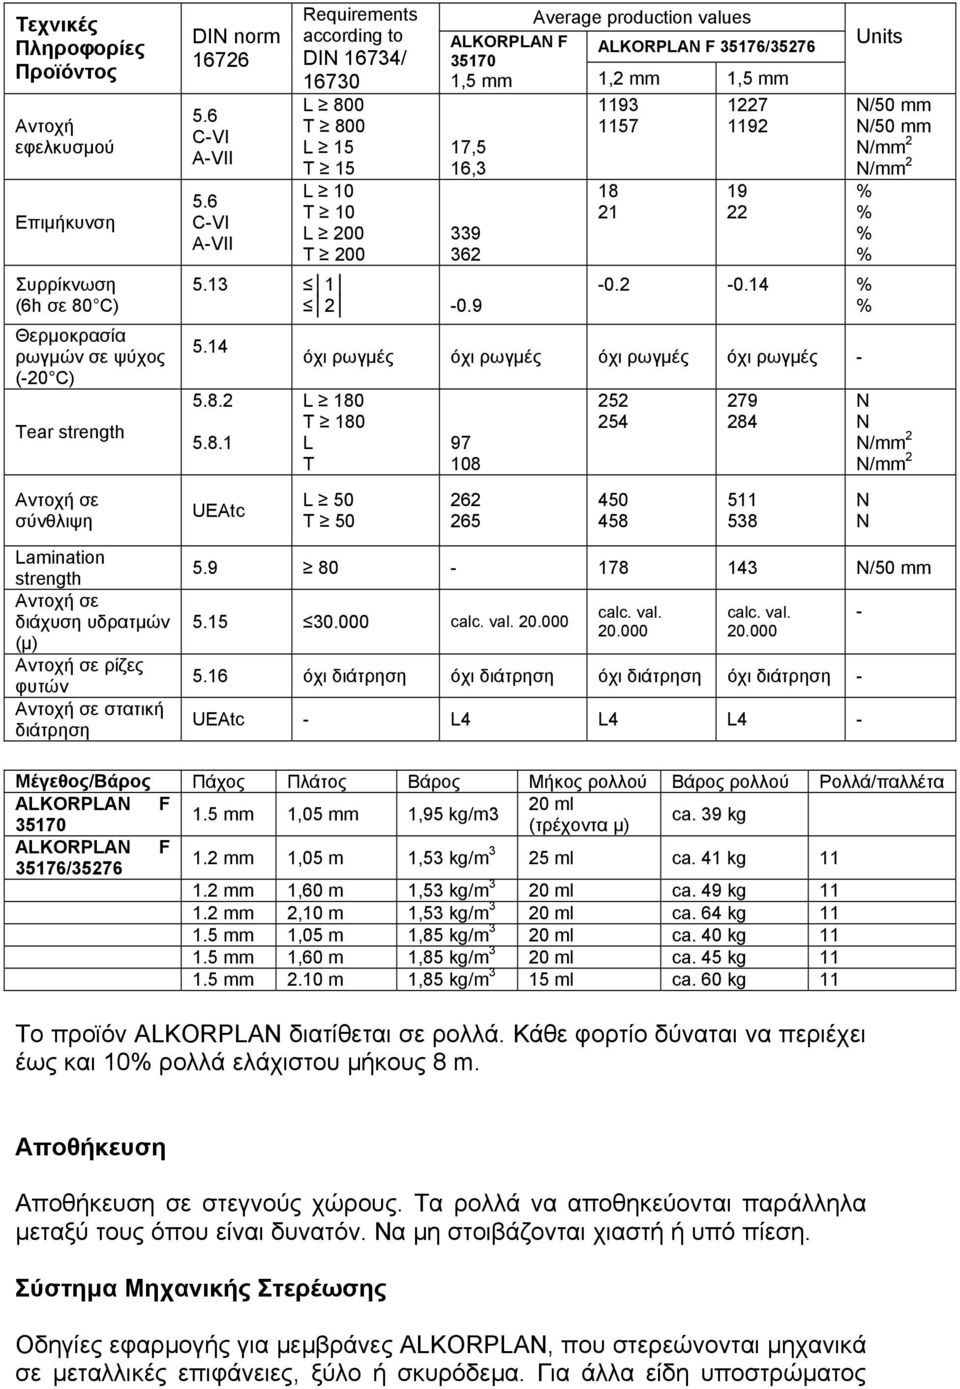 6 CVI AVII Requirements according to DIN 16734/ 16730 L 800 T 800 L 15 T 15 L 10 T 10 L 200 T 200 Average production values ALKORPLAN F 35170 ALKORPLAN F 35176/35276 1,5 mm 1,2 mm 1,5 mm 1193 1227